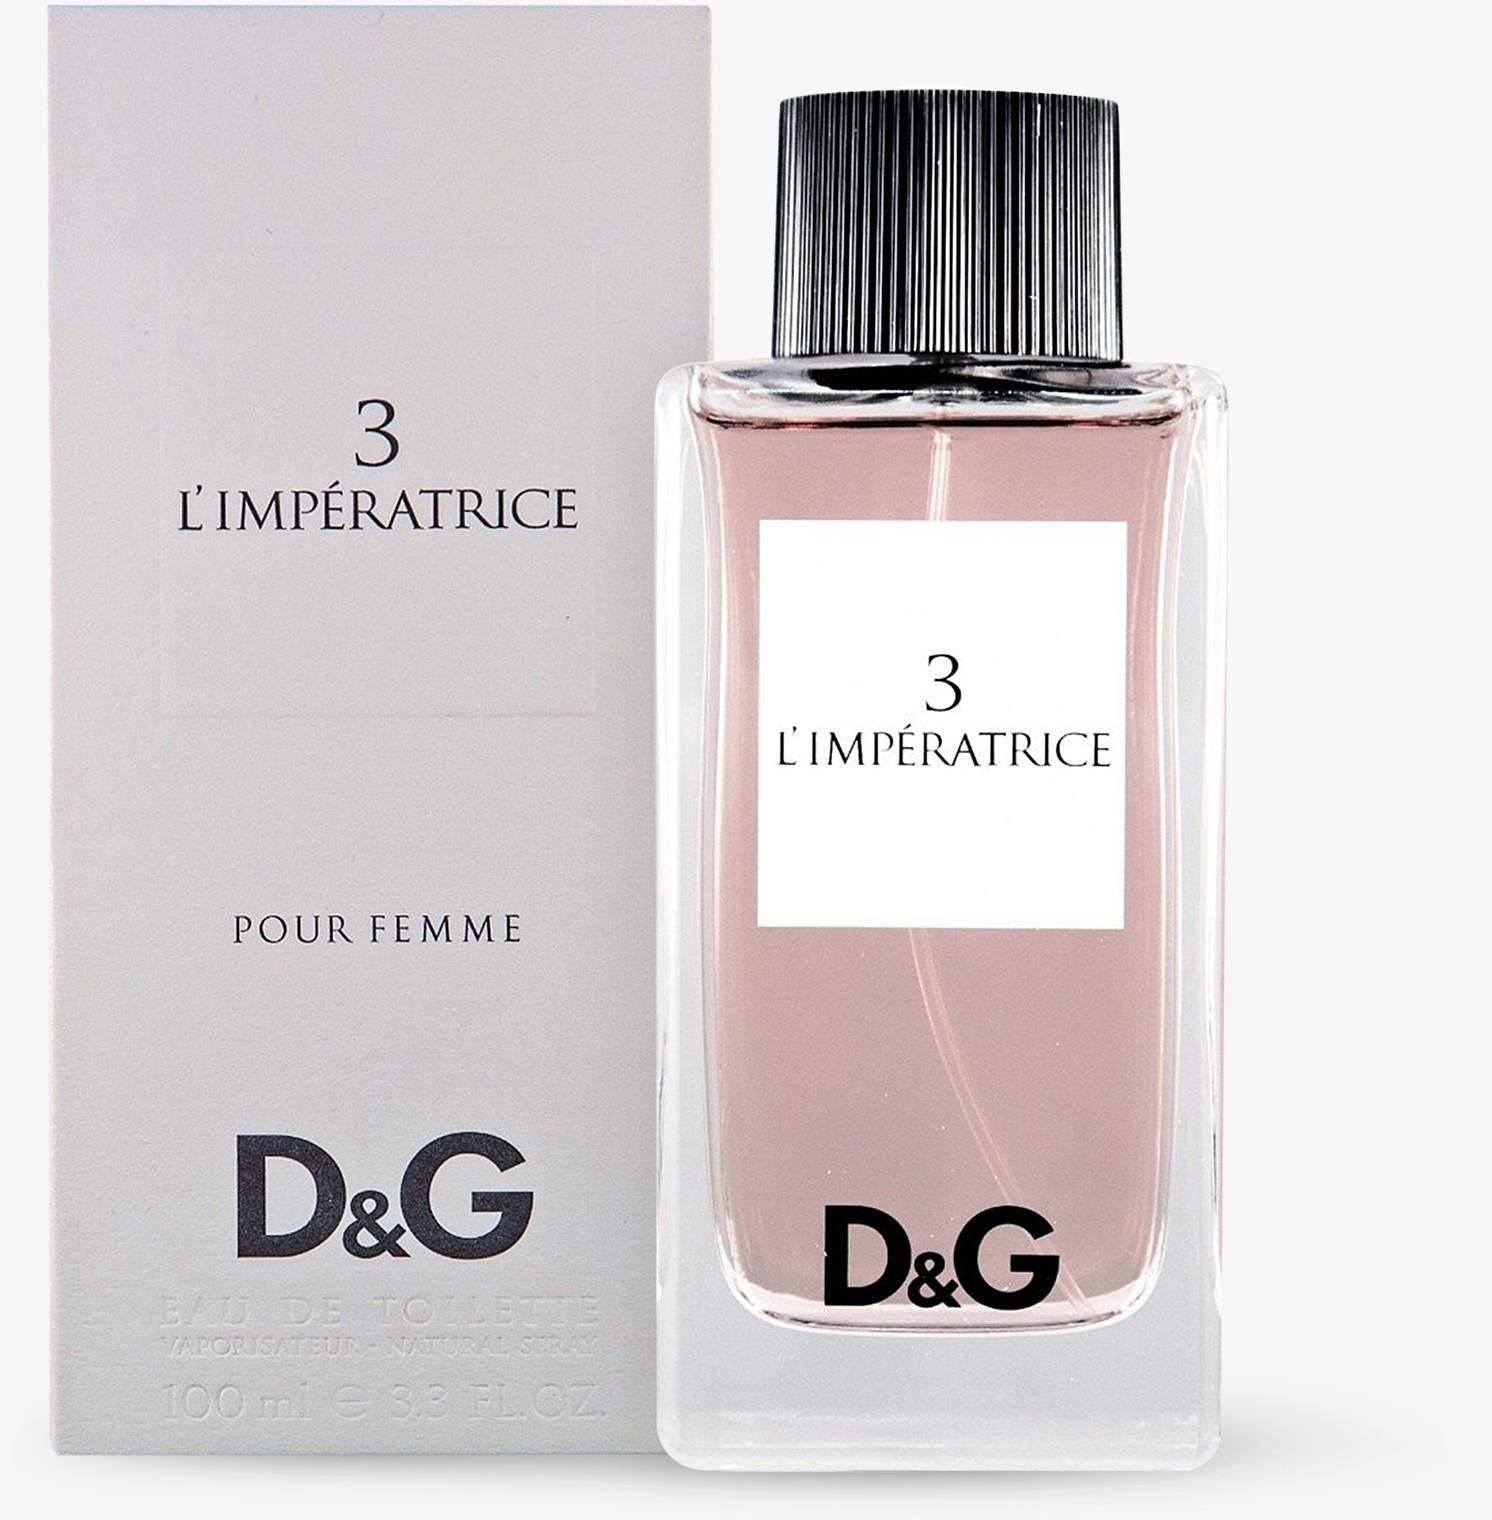 D&G 3 L'imperatrice Pour Femme Eau De Toilette 100ml price from sivvi ...